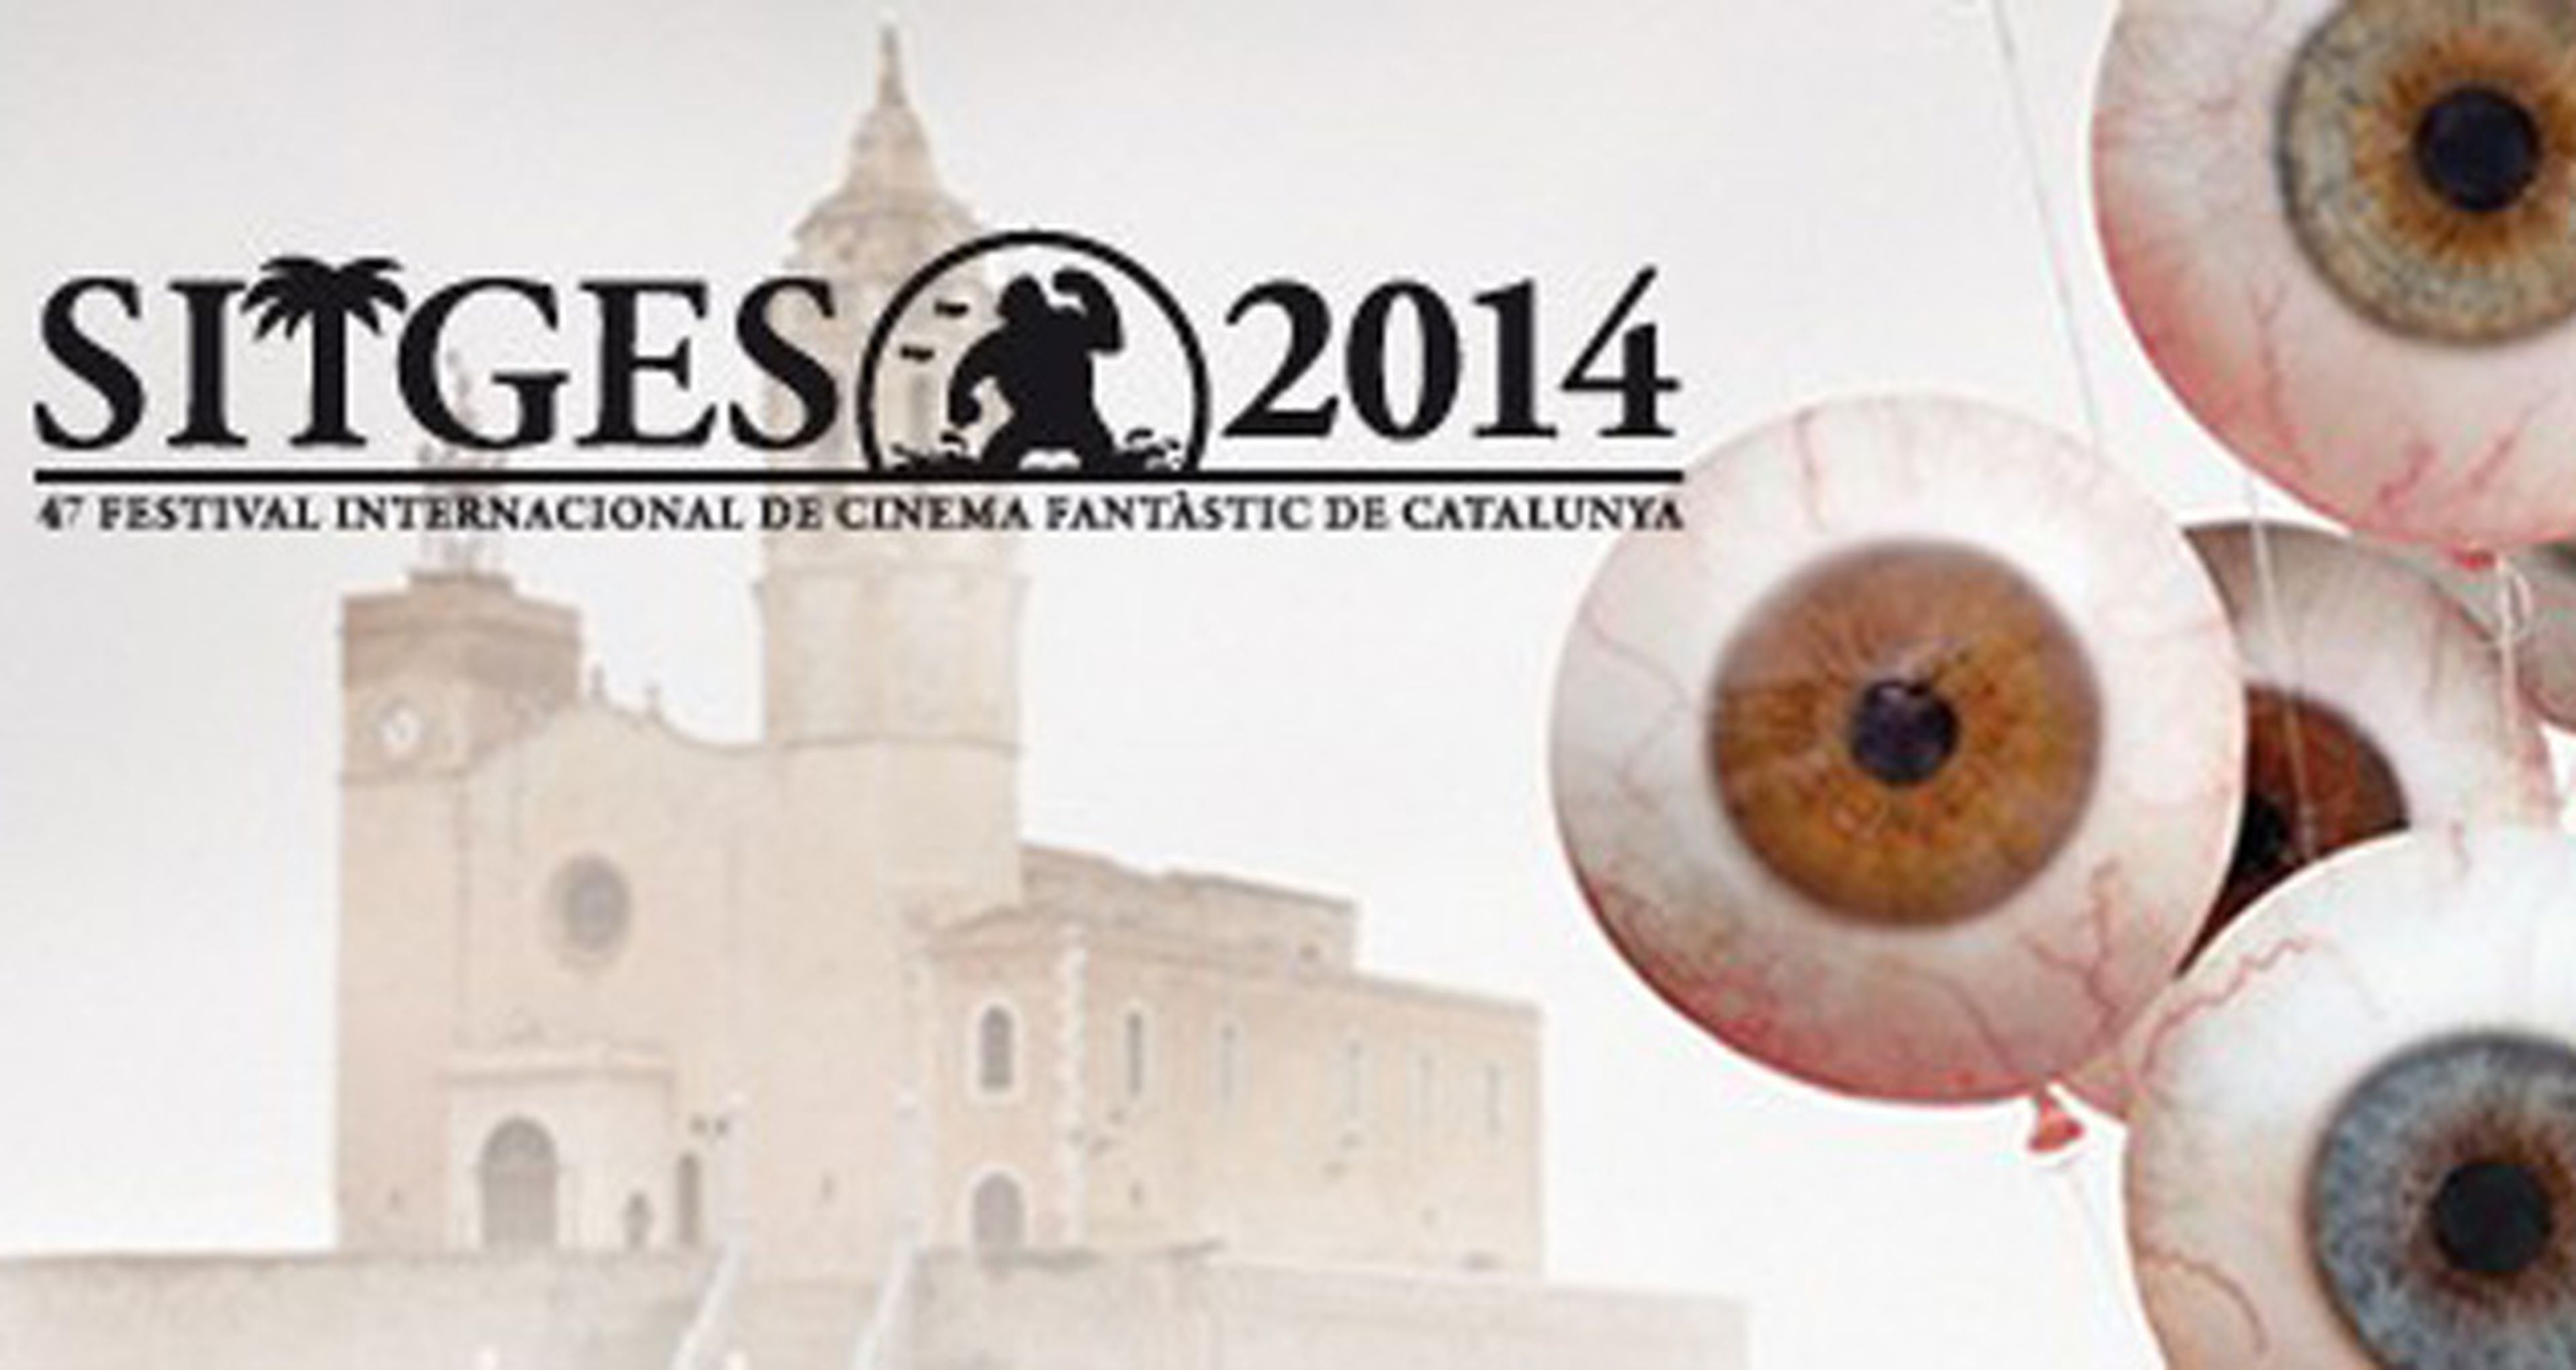 Posesiones demoníacas y casas encantadas en el Festival de Sitges 2014